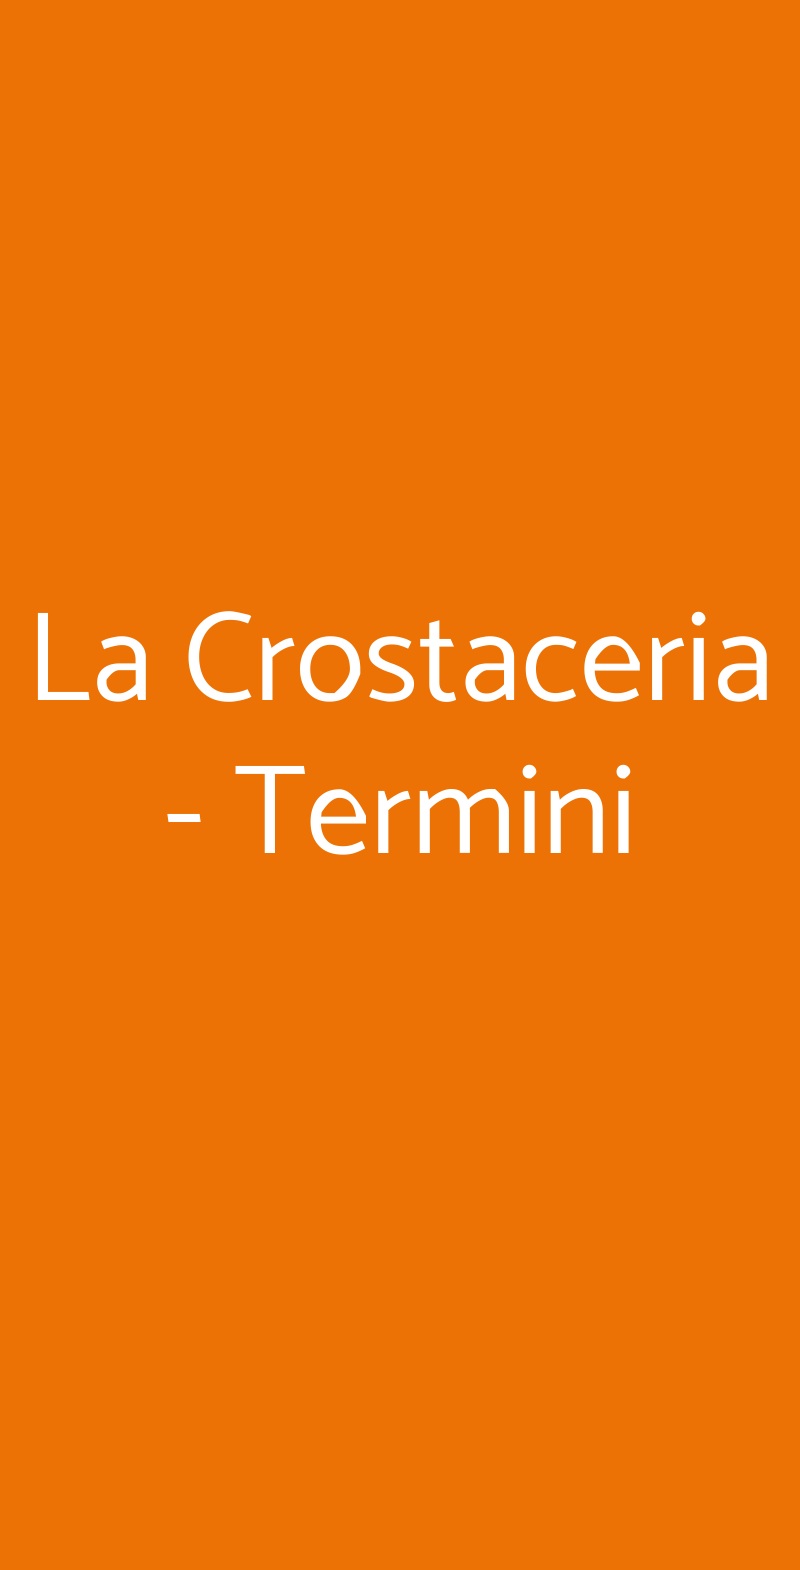 La Crostaceria - Termini Roma menù 1 pagina